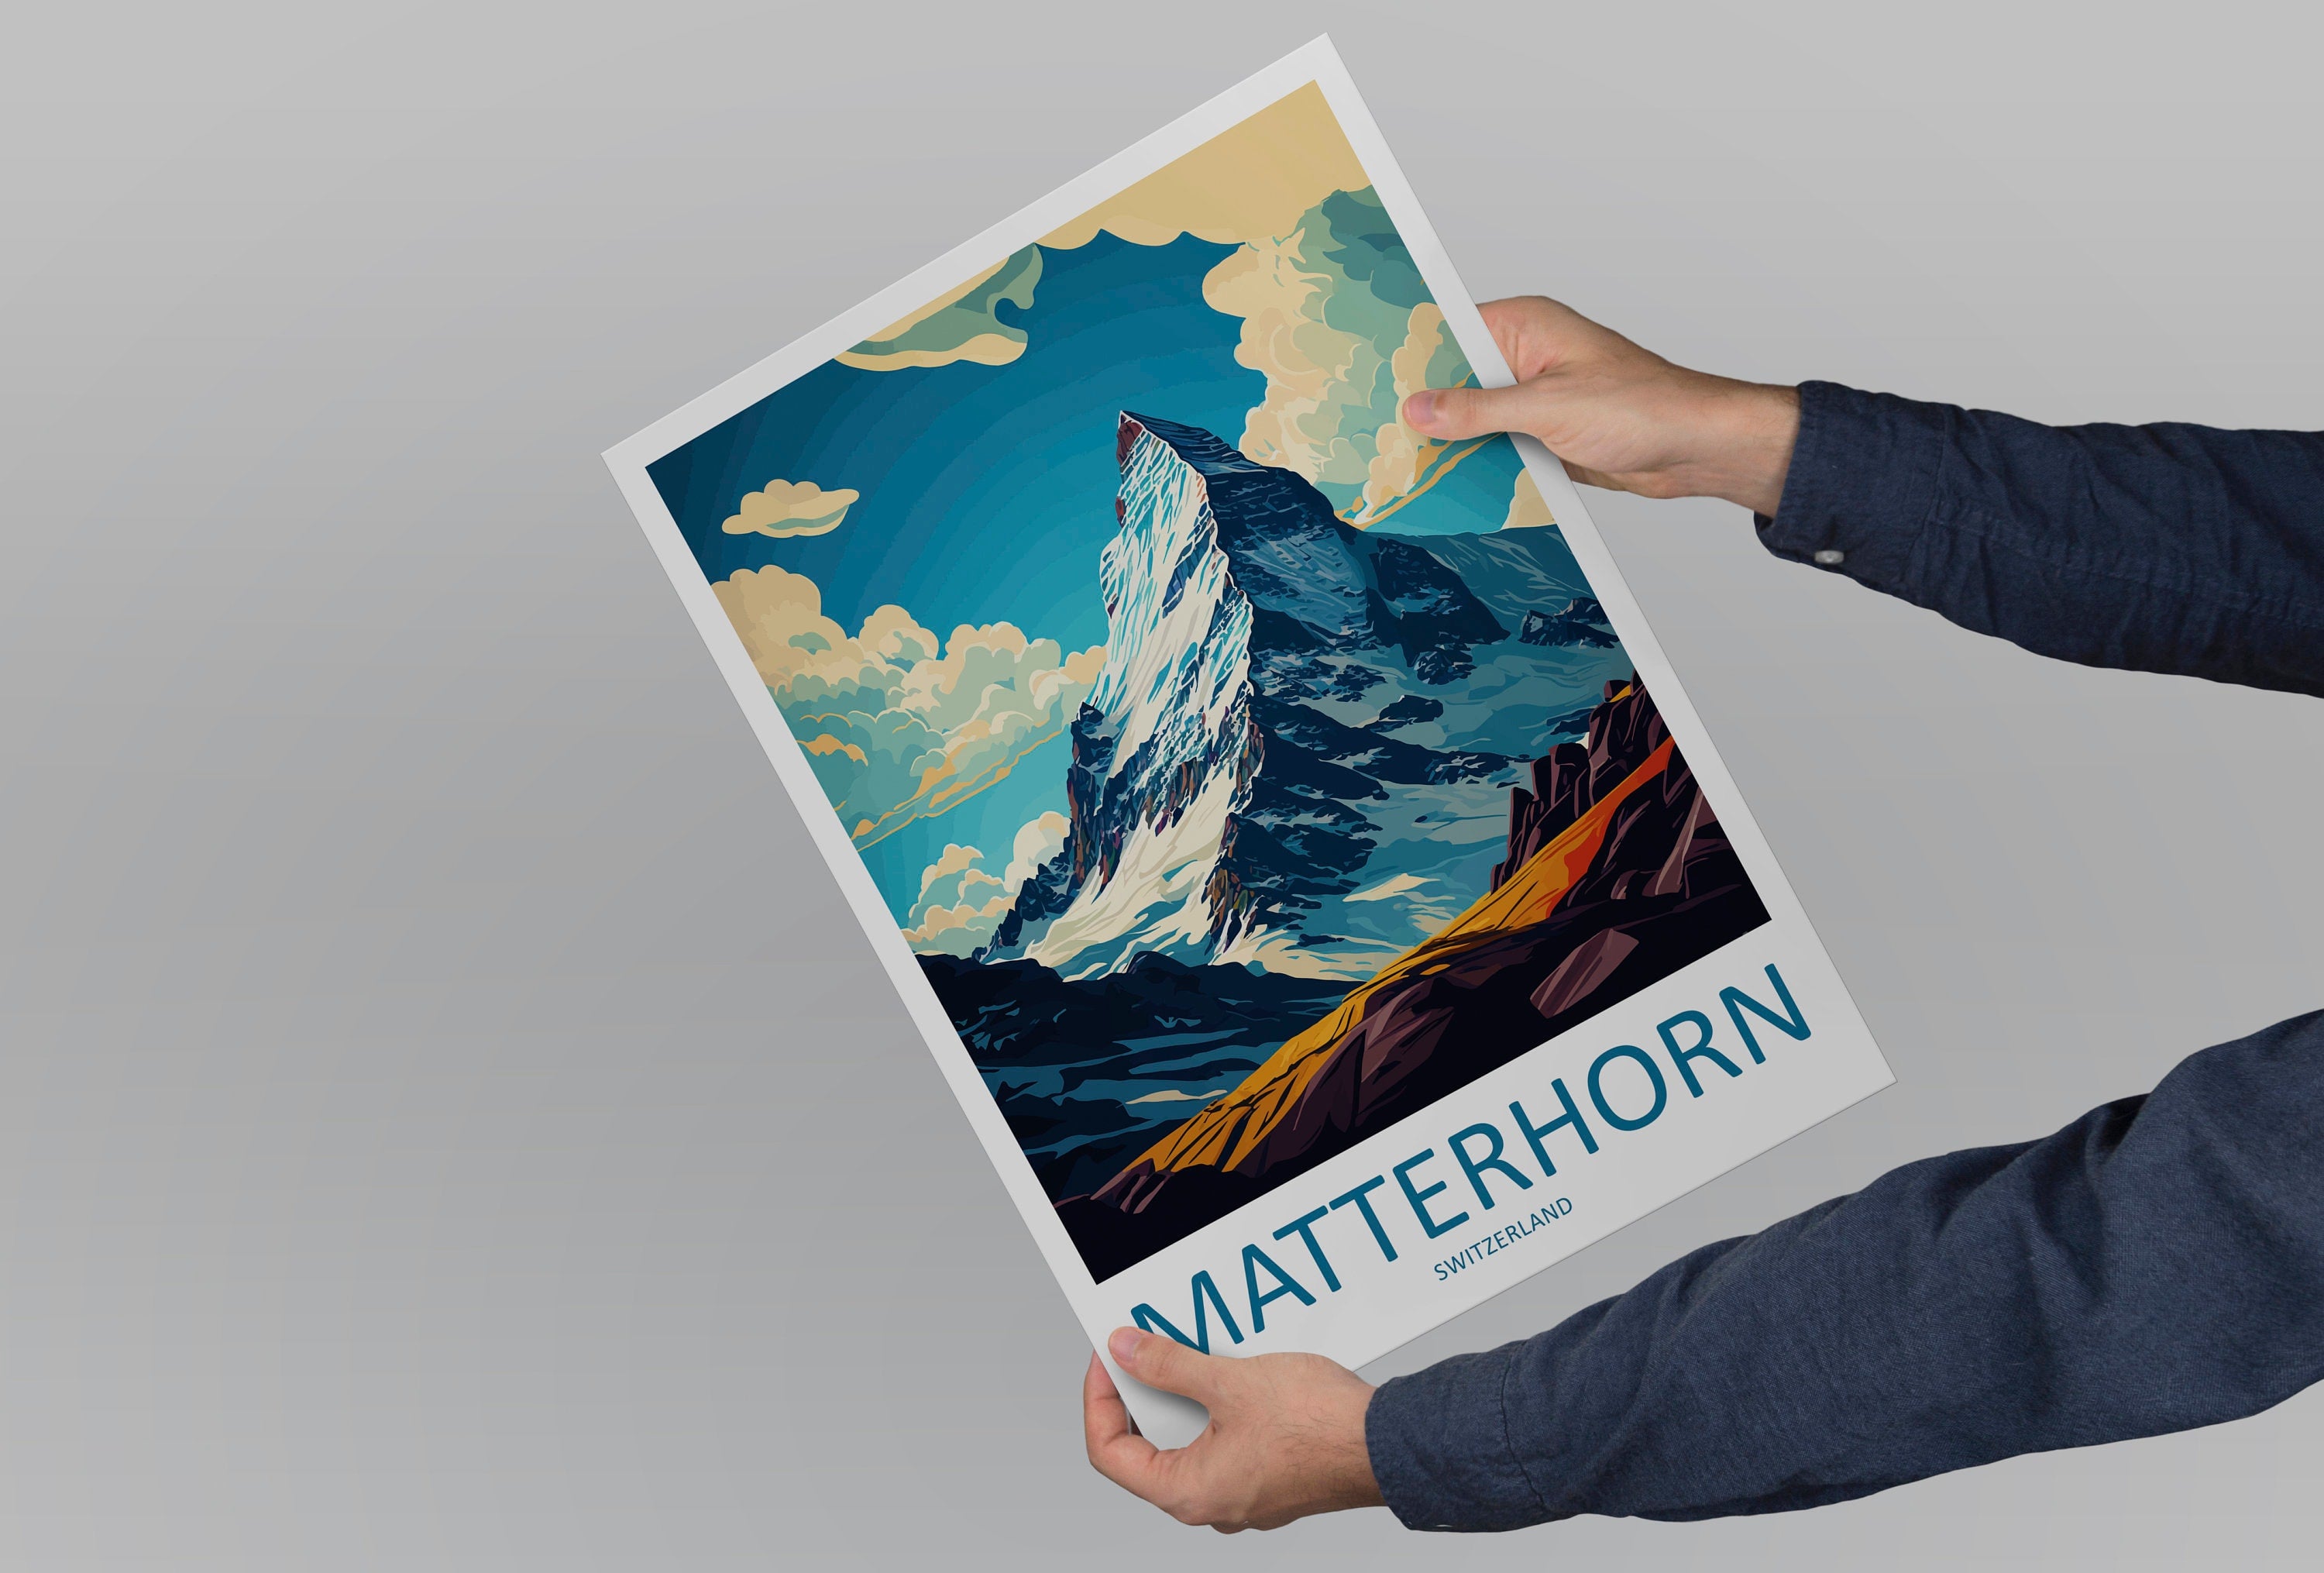 Matterhorn Travel Print Wall Art Matterhorn Wall Hanging Home Décor Matterhorn Gift Art Lovers Switzerland Art Lover Gift Matterhorn Travel